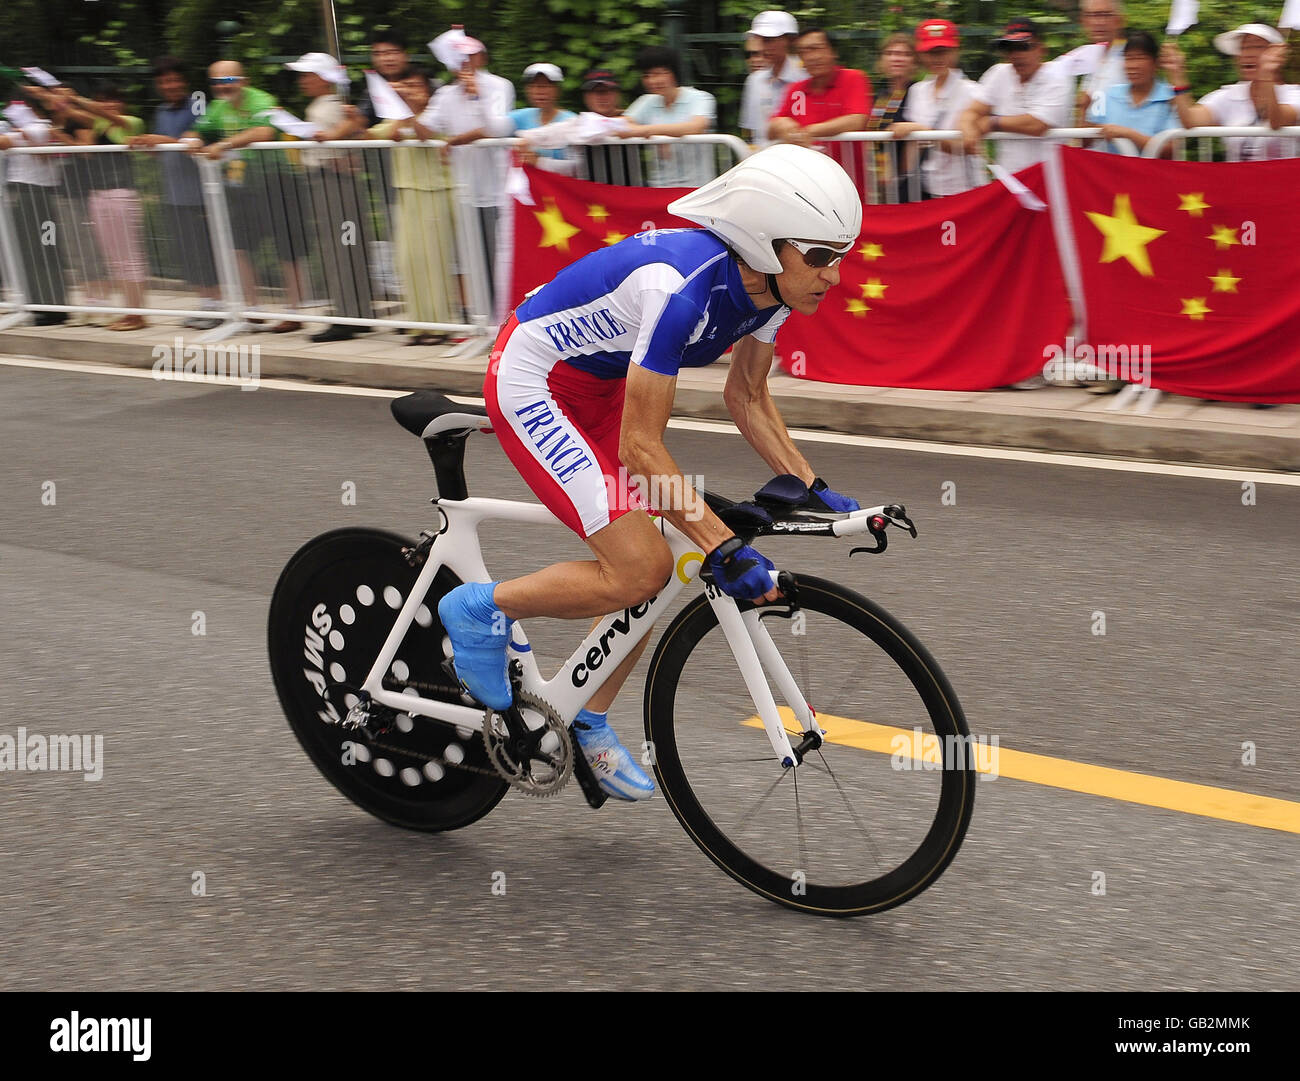 Jeannie Longo Ciprelli, de Francia, monta hoy en el Juicio de Tiempo Individual de las Mujeres en los Juegos Olímpicos de Beijing, China. Foto de stock